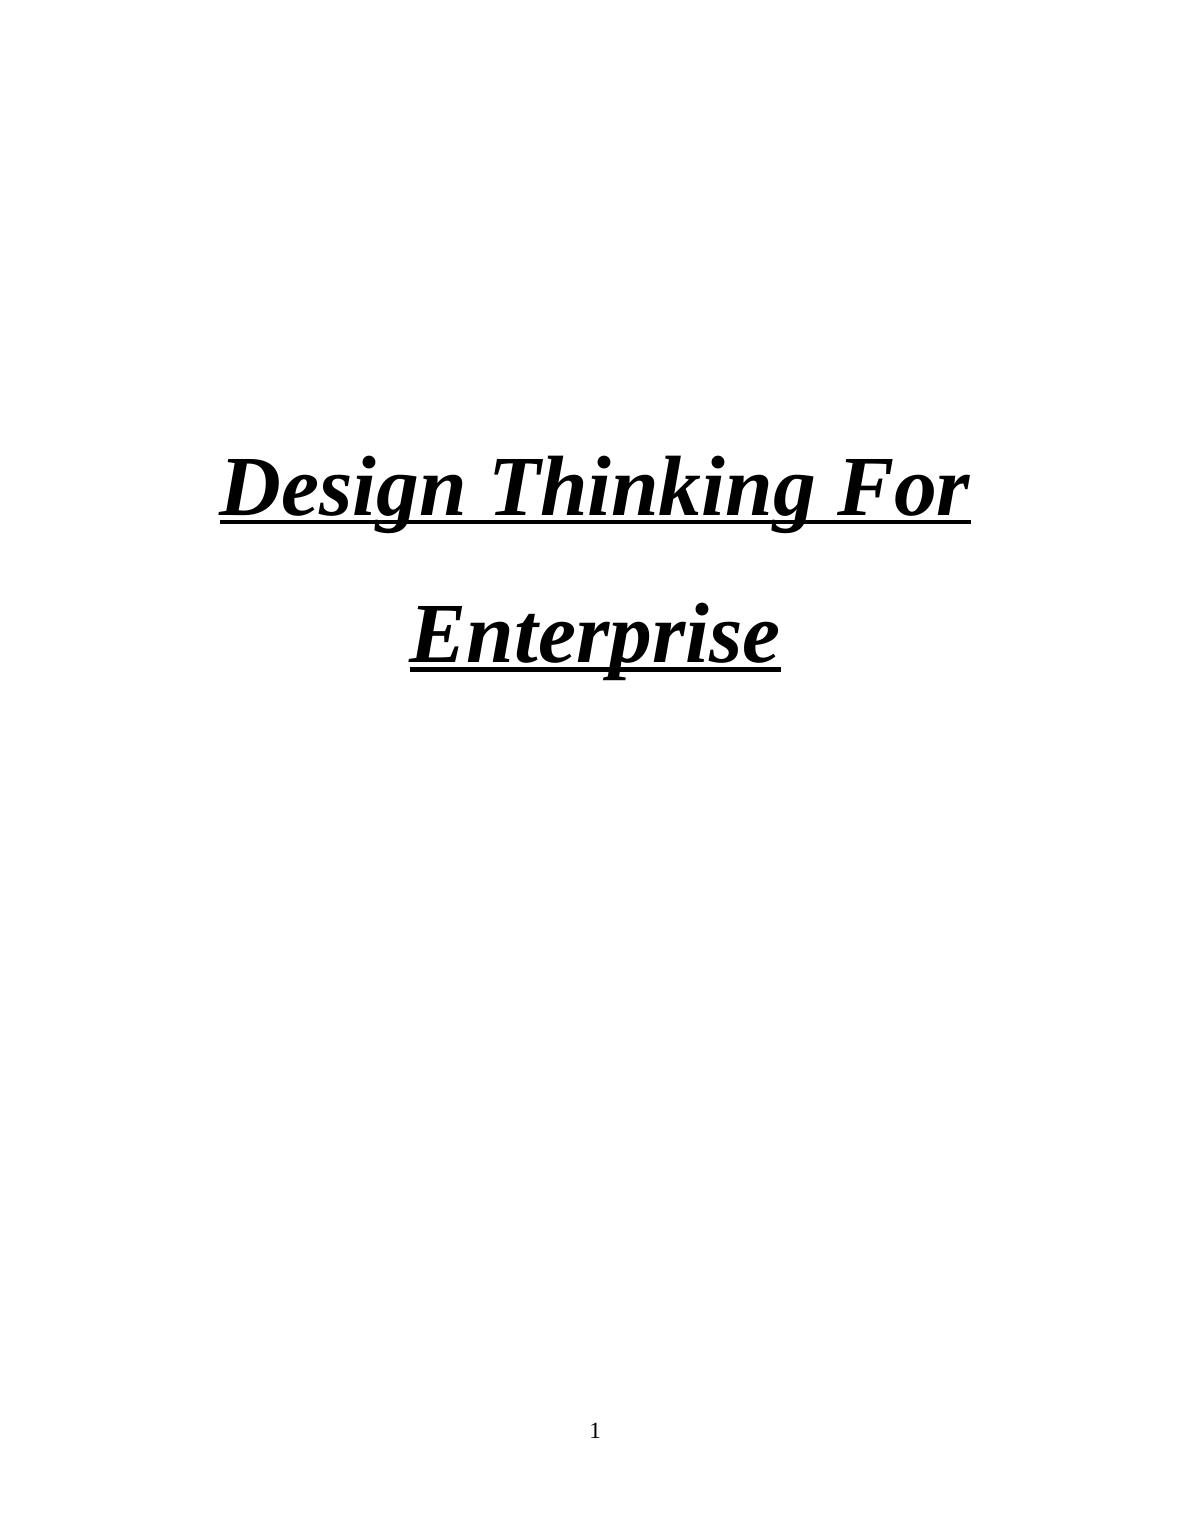 Design Thinking For Enterprise_1